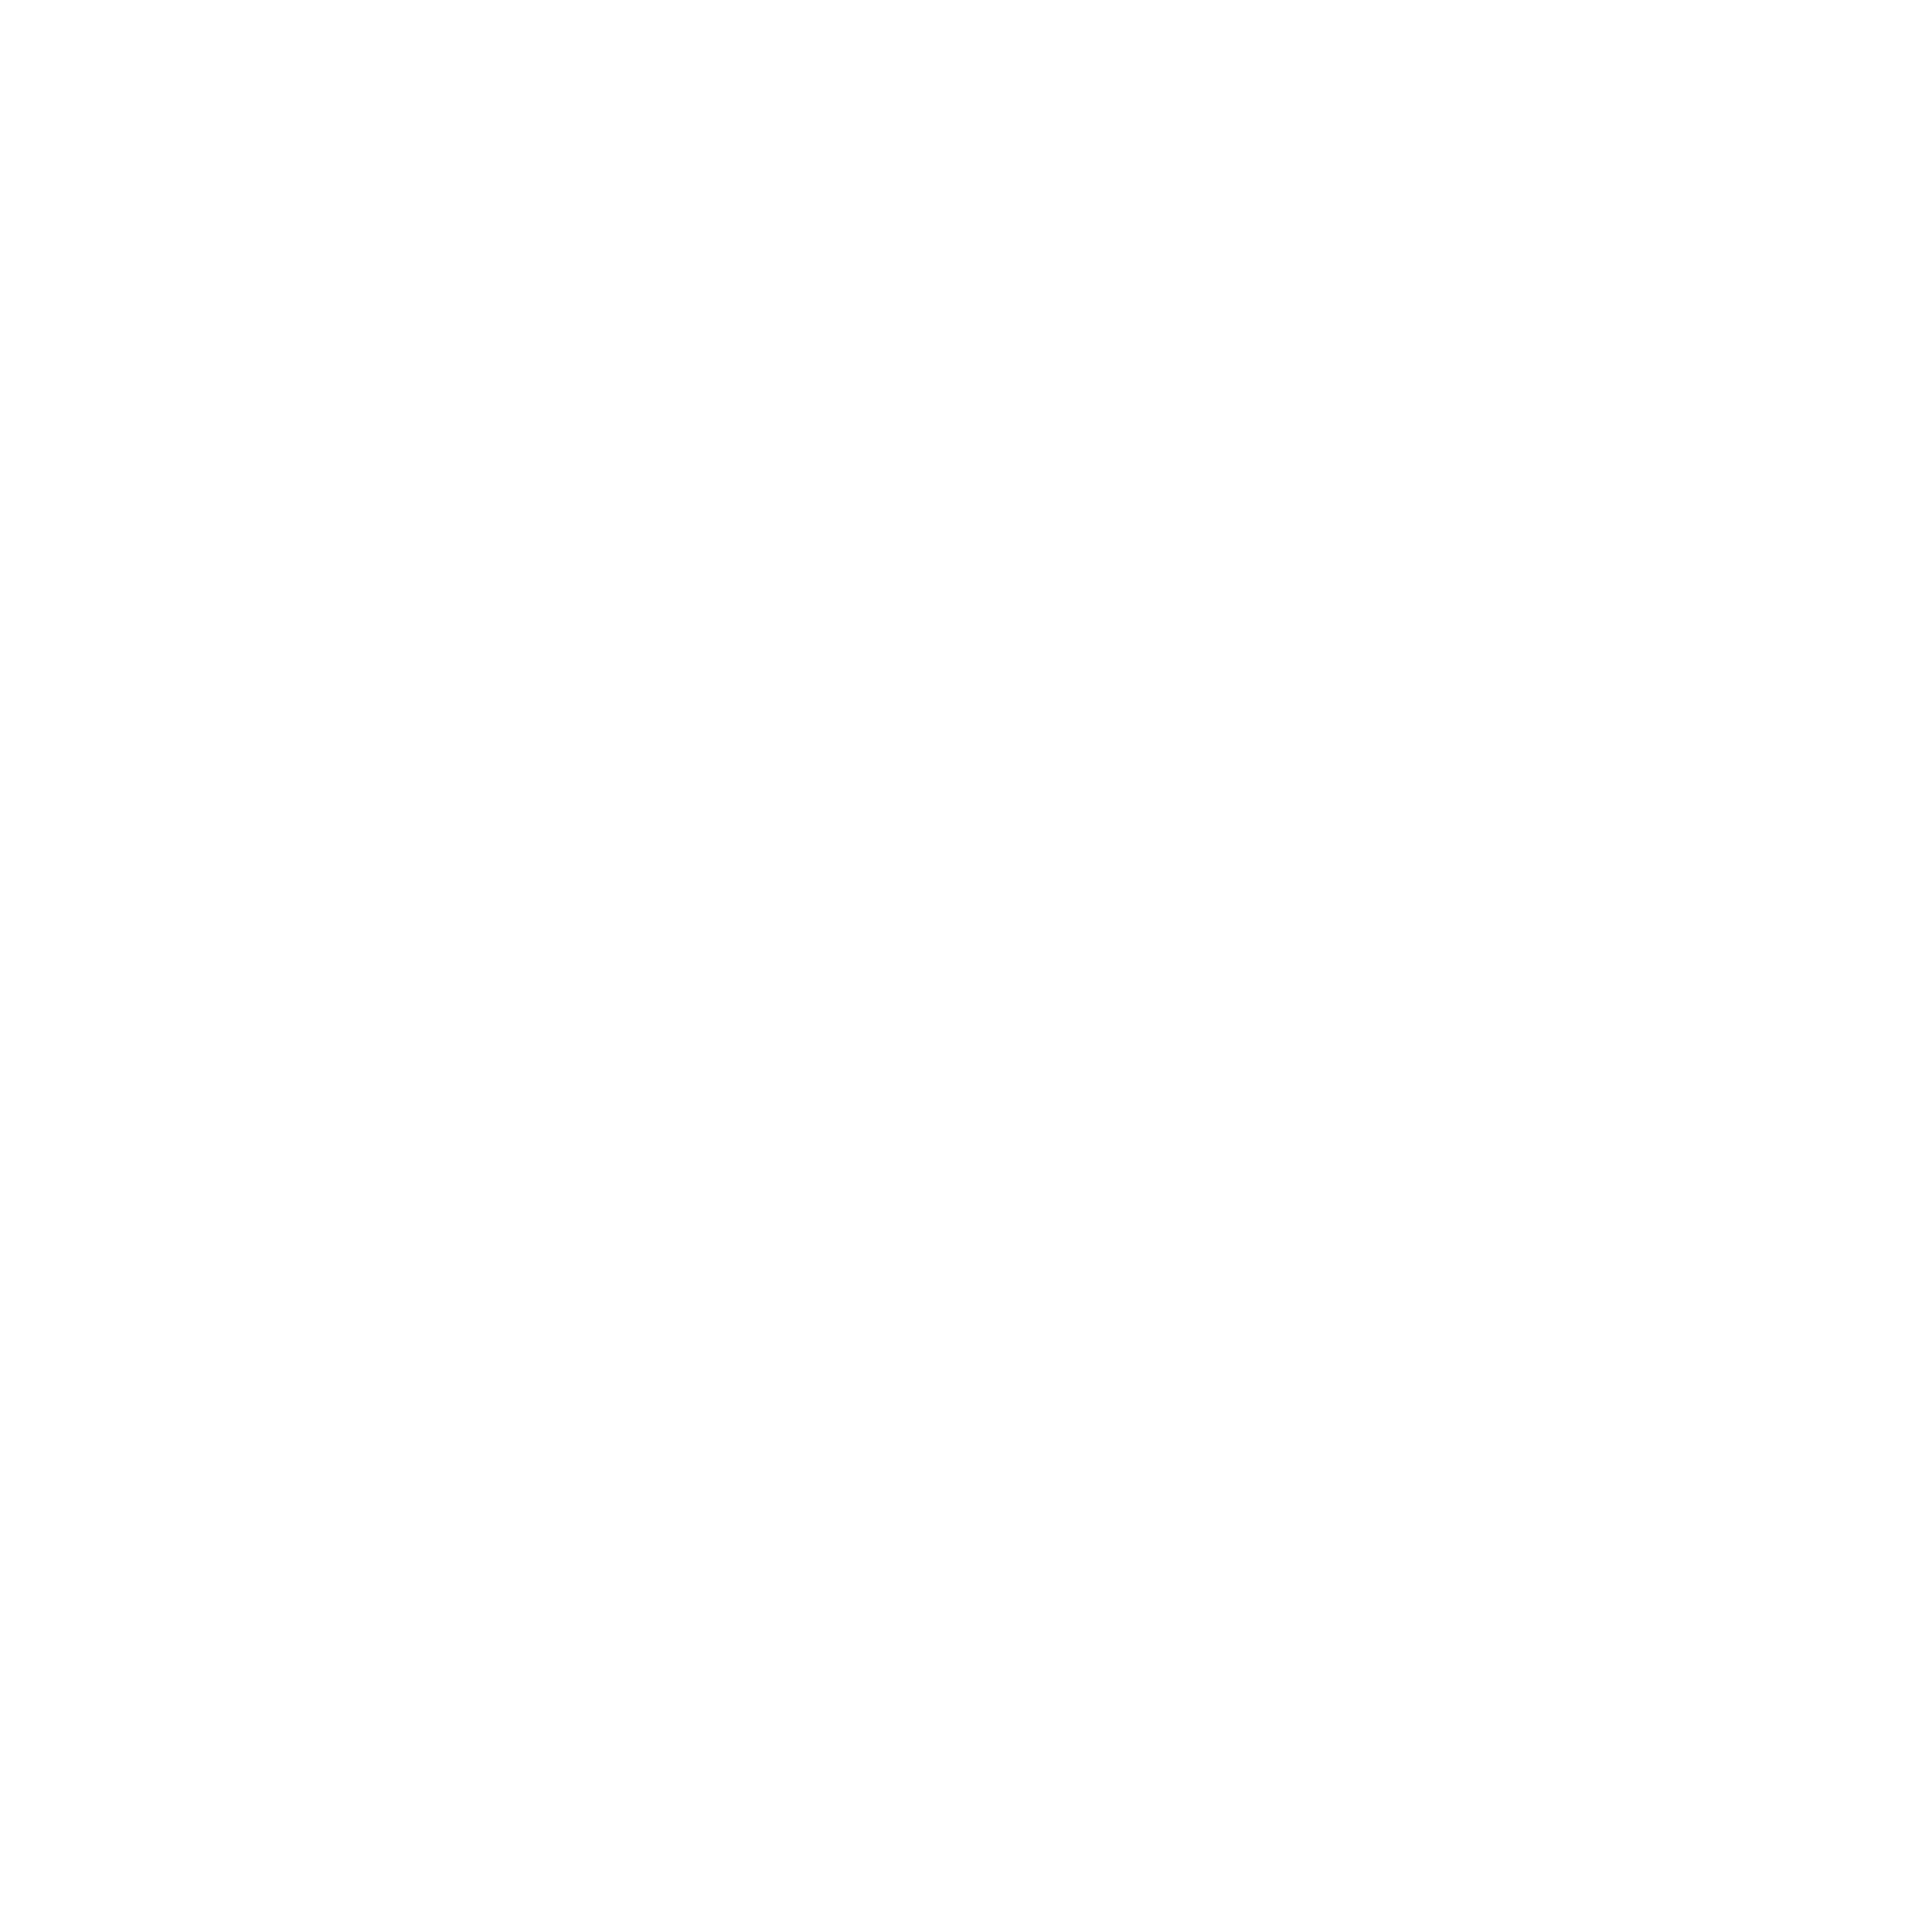 Verellen About